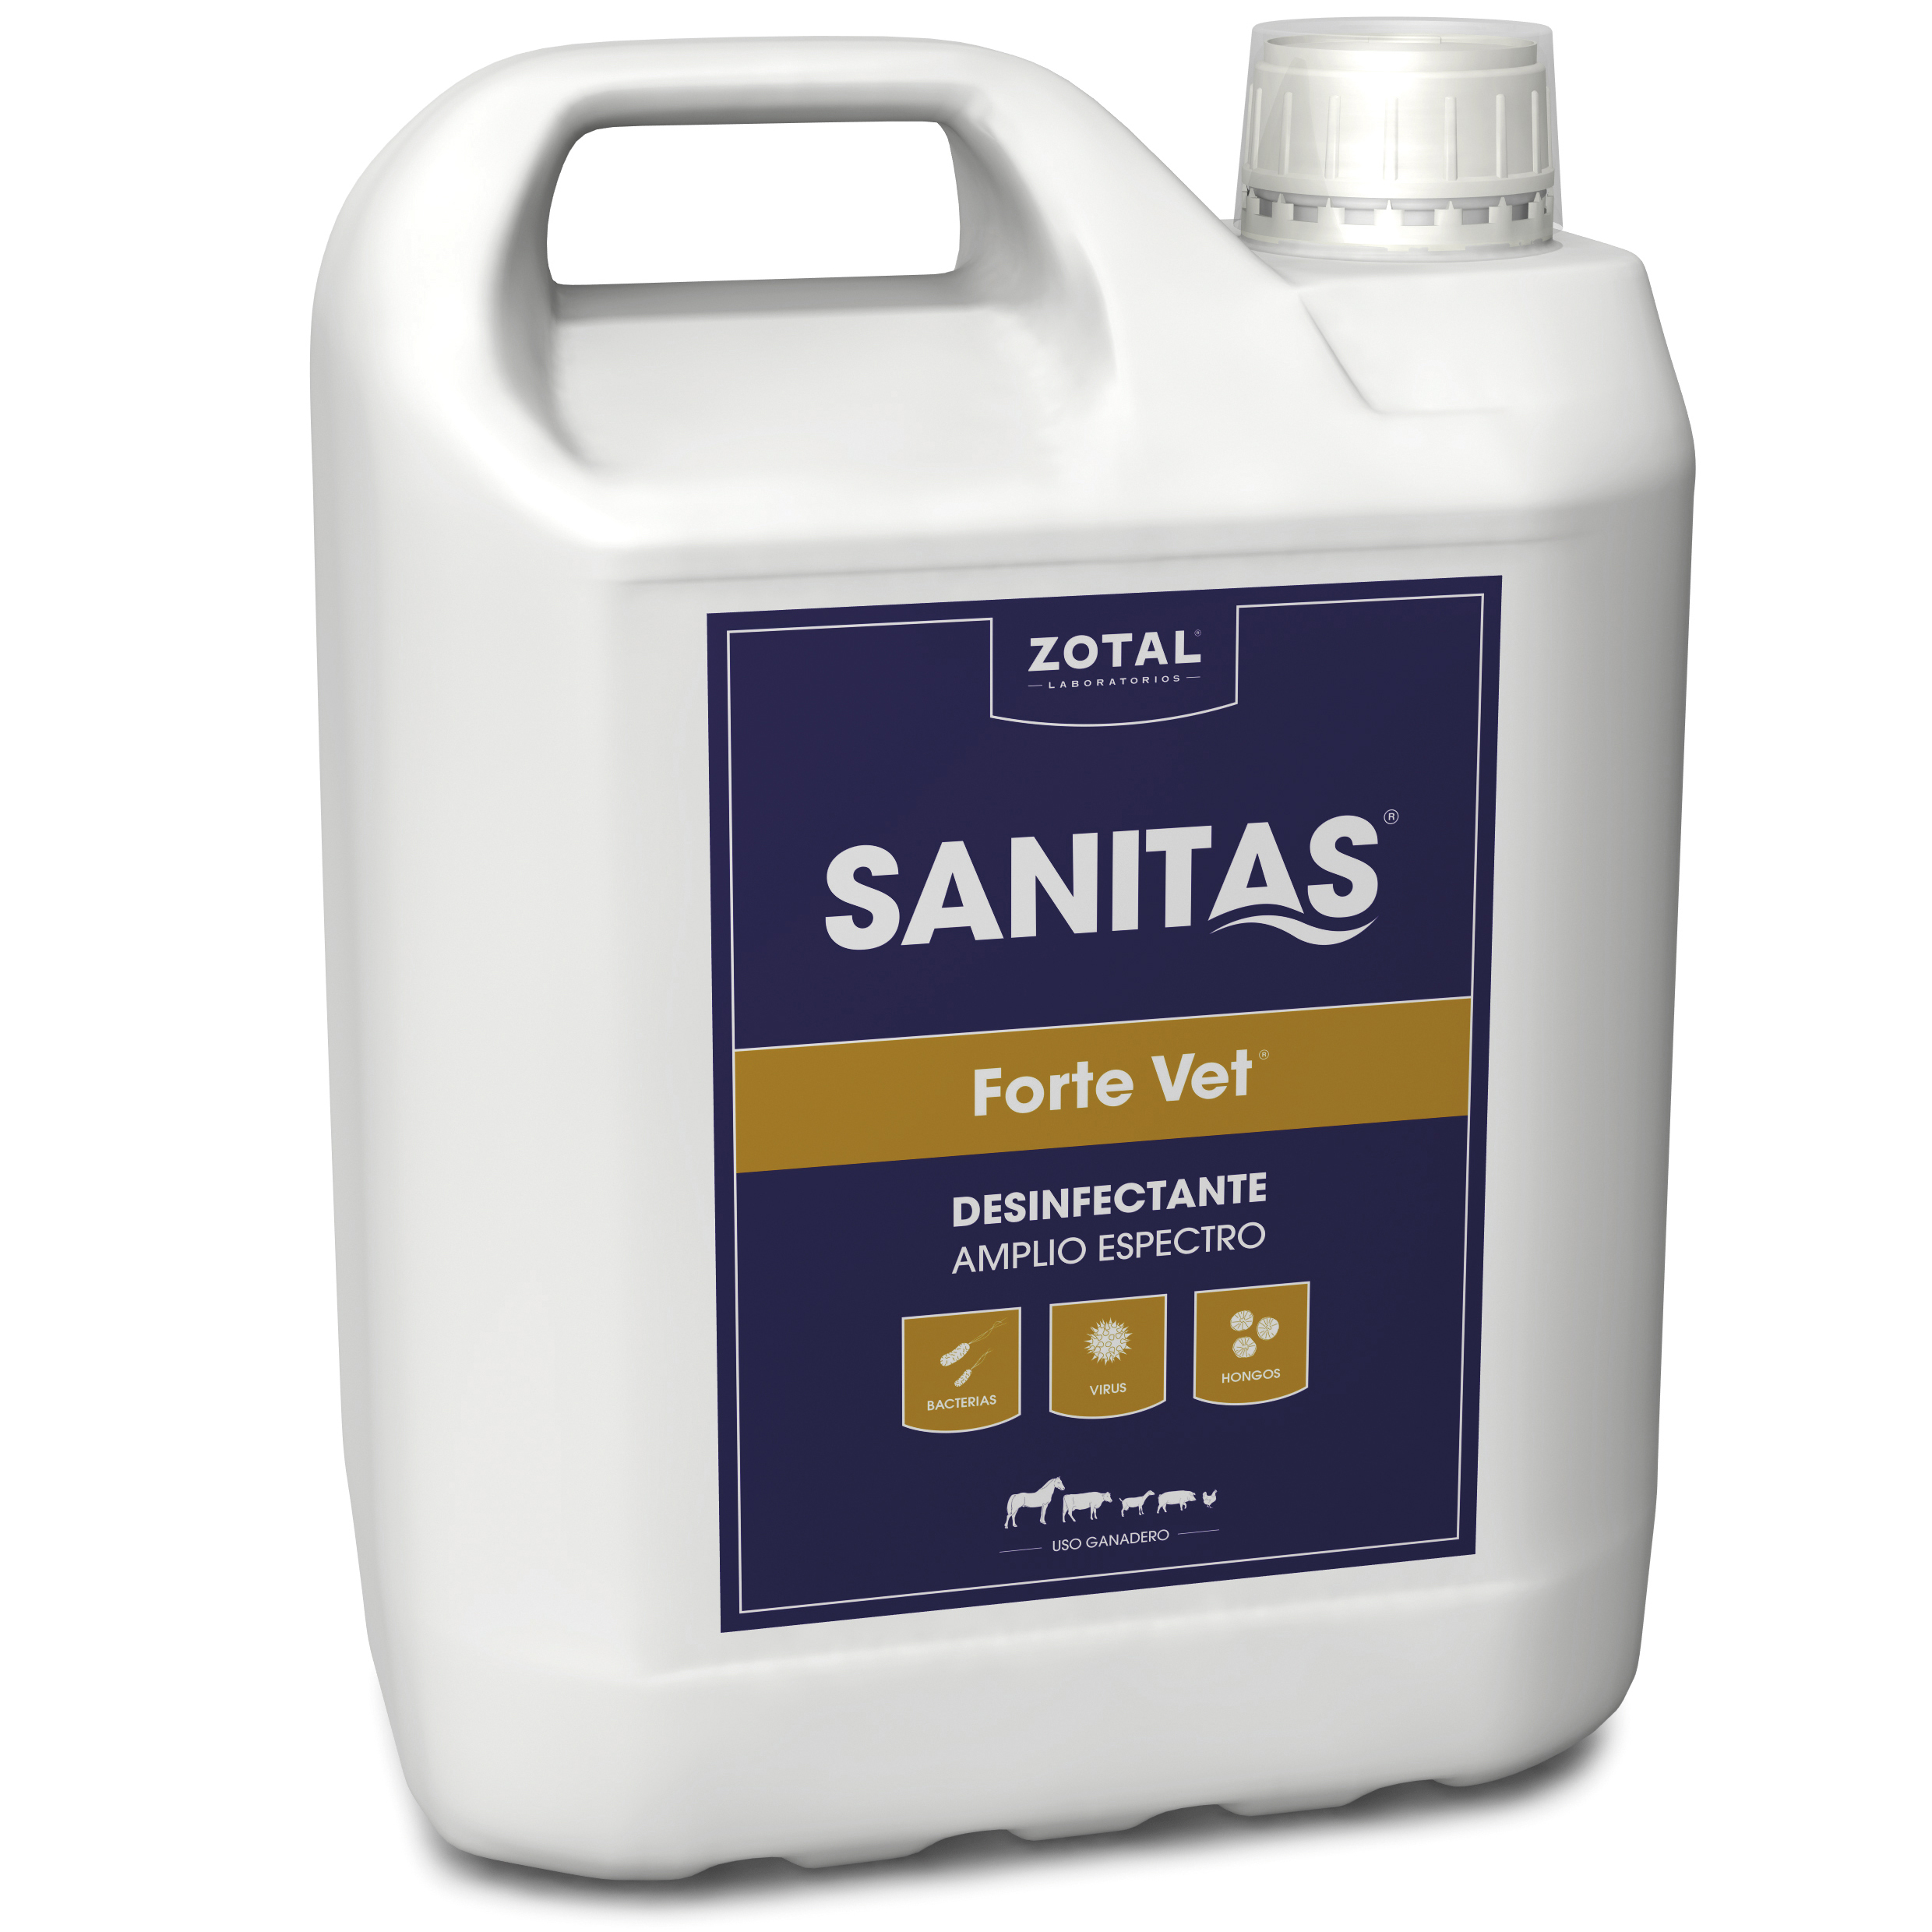 SANITAS® Forte Vet: Desinfectante de Amplio Espectro